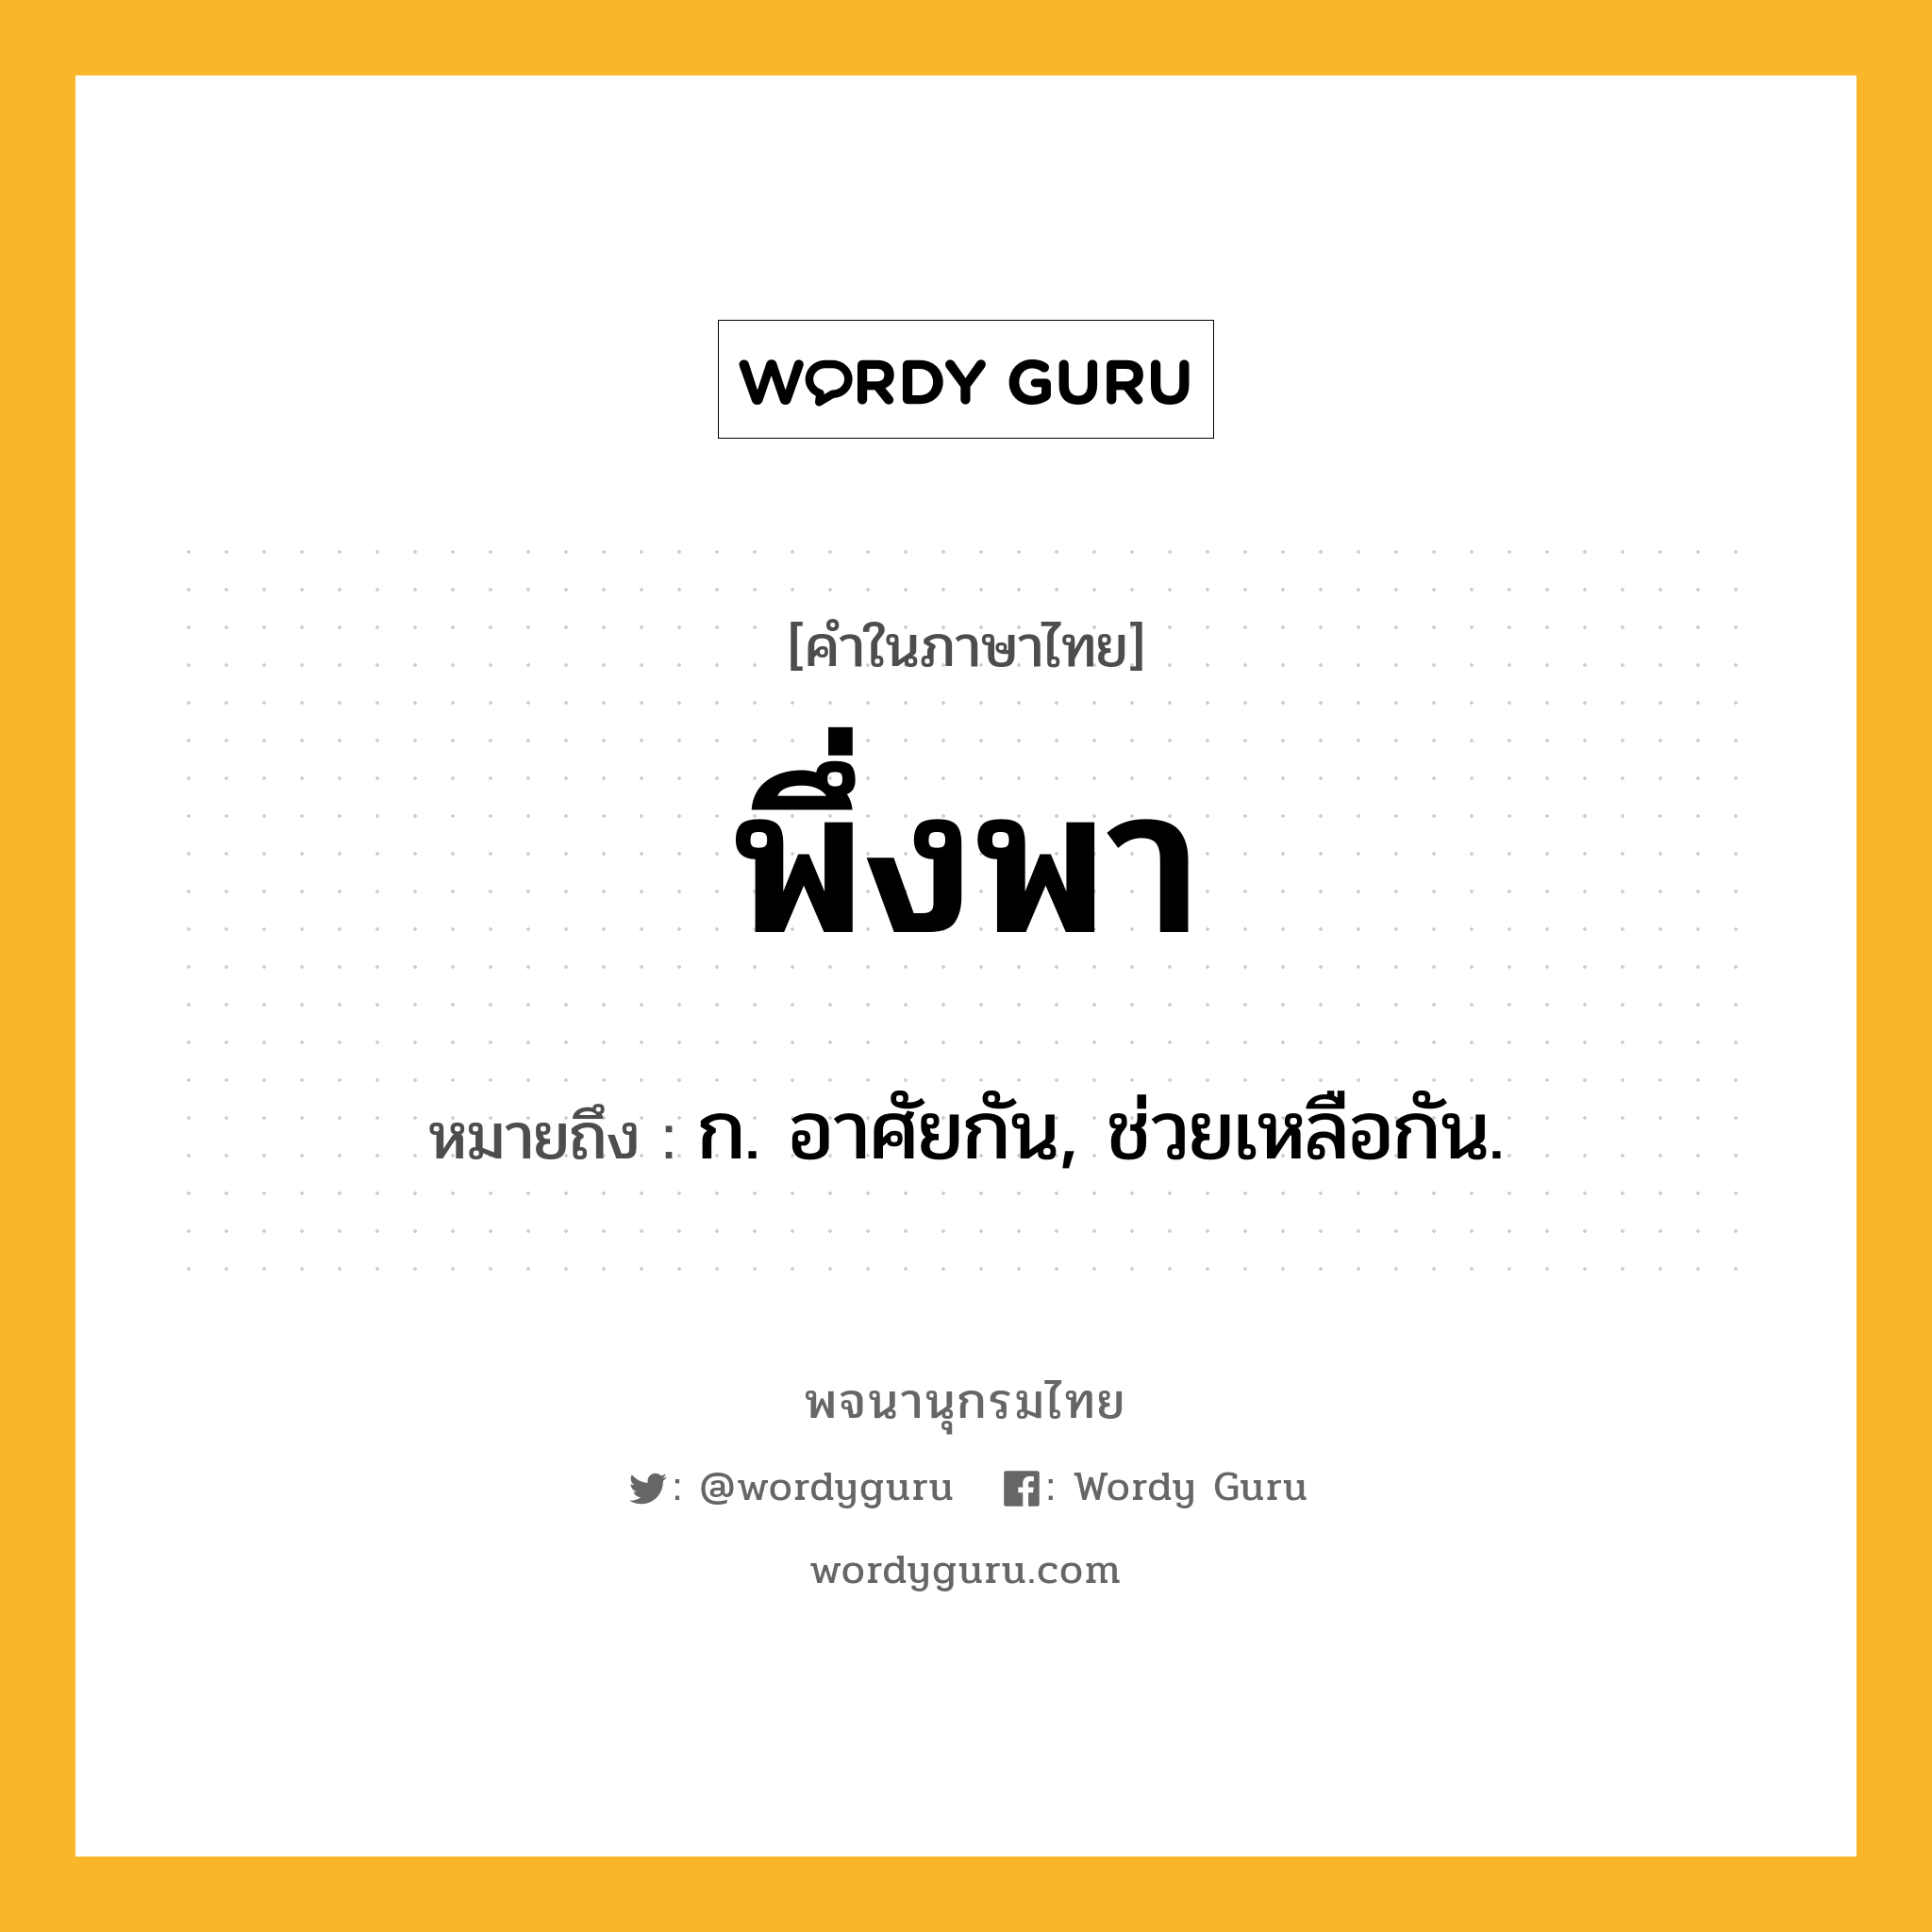 พึ่งพา ความหมาย หมายถึงอะไร?, คำในภาษาไทย พึ่งพา หมายถึง ก. อาศัยกัน, ช่วยเหลือกัน.